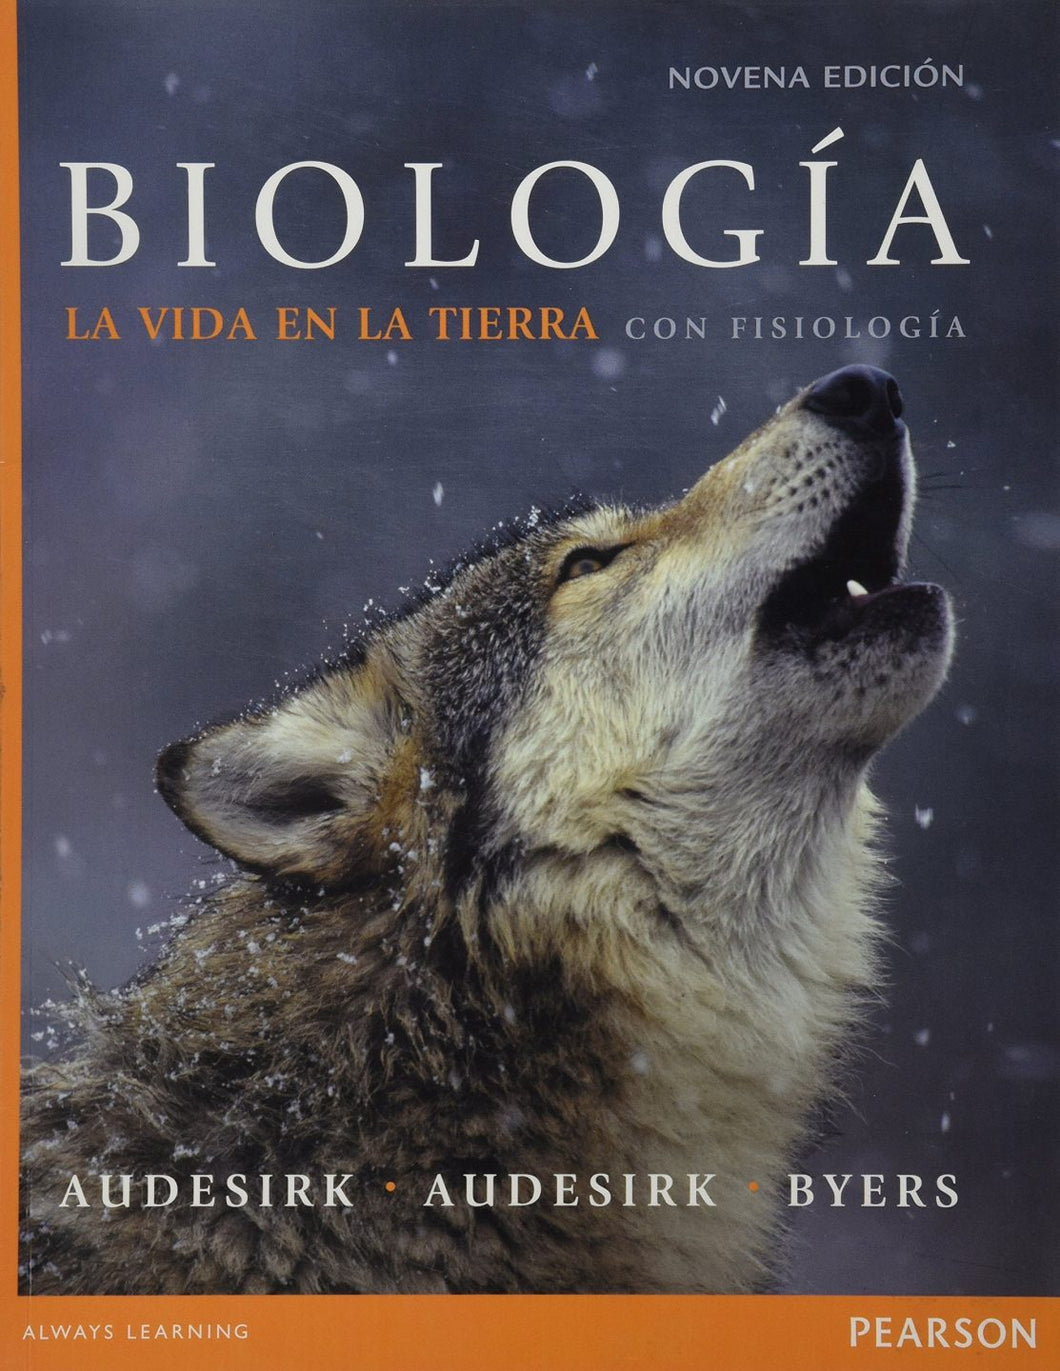 BIOLOGÍA: LA VIDA EN LA TIERRA CON FISIOLOGÍA - Audesirk, Audesirk y Byers